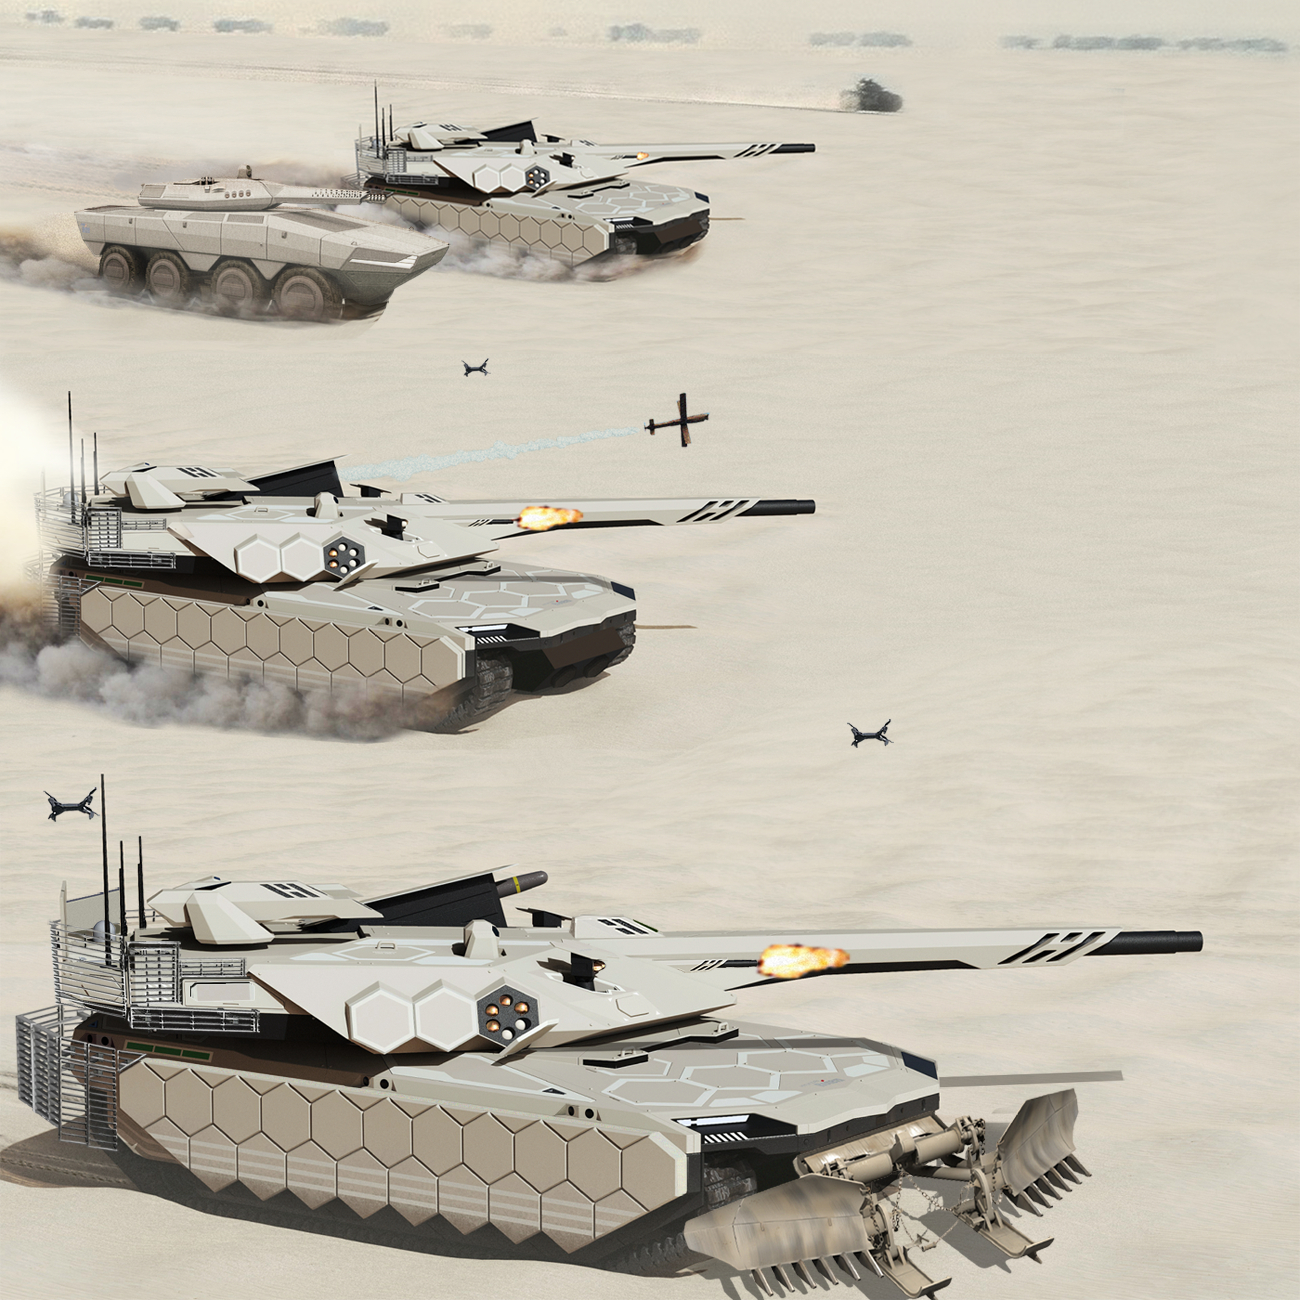 2038: Next-Generation Main Battle Tanks in desert by indowflavour on  DeviantArt